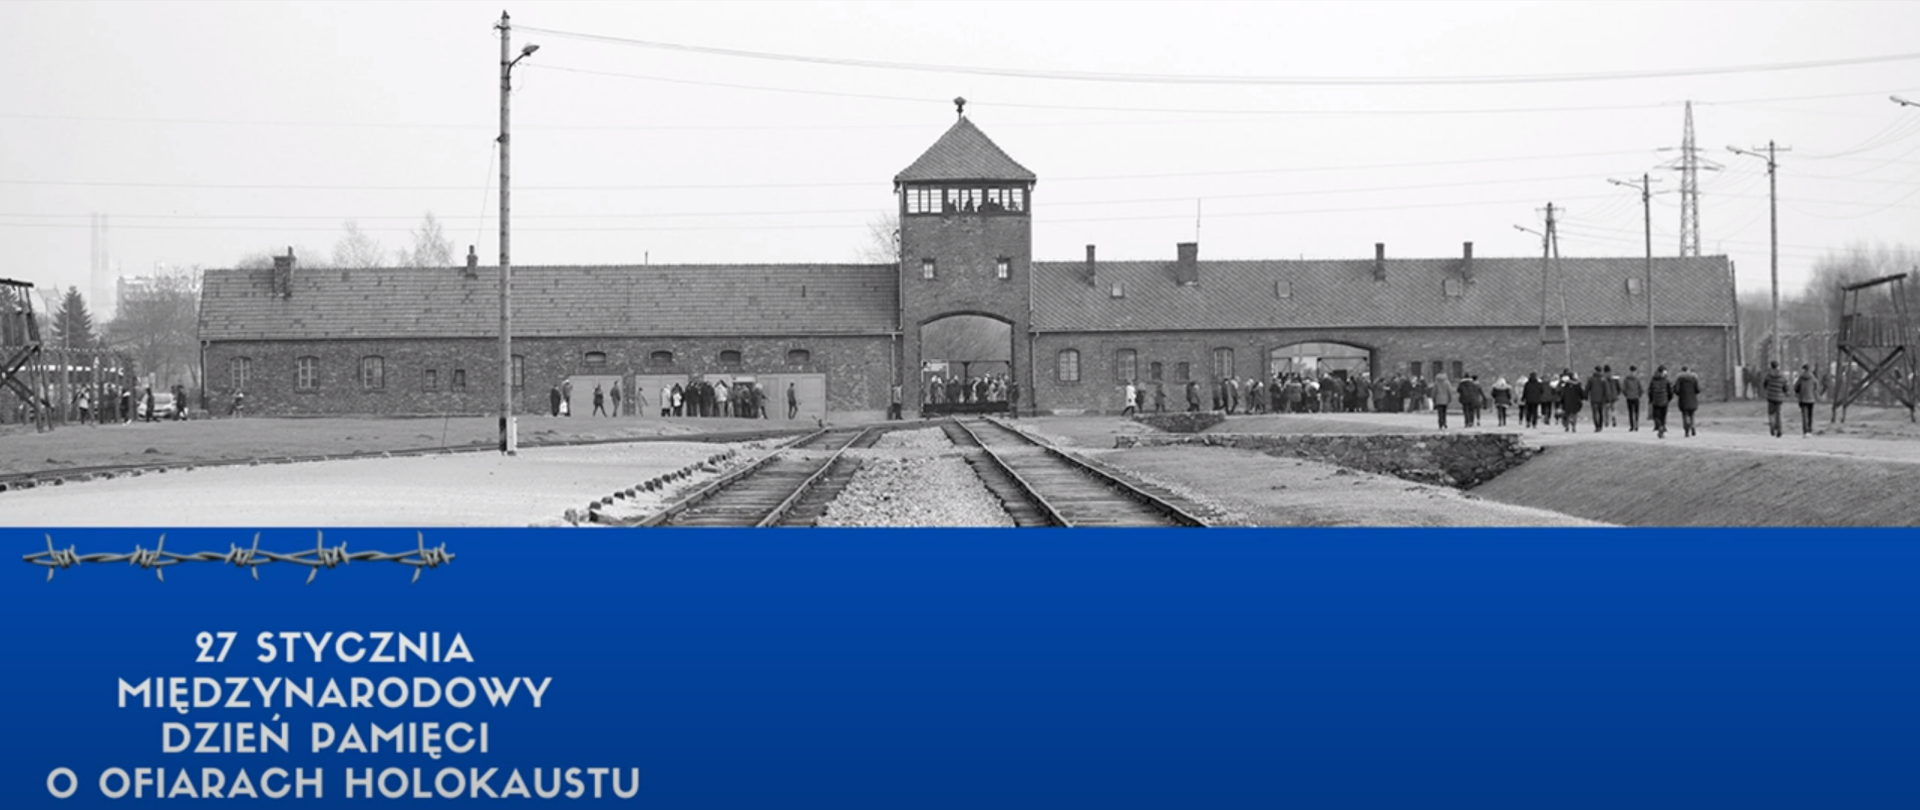 Zdjęcie obozu w Auschwitz z niebieskim pasem na dole i tekstem "27 stycznia Międzynarodowy Dzień Pamięci o Ofiarach Holokaustu"